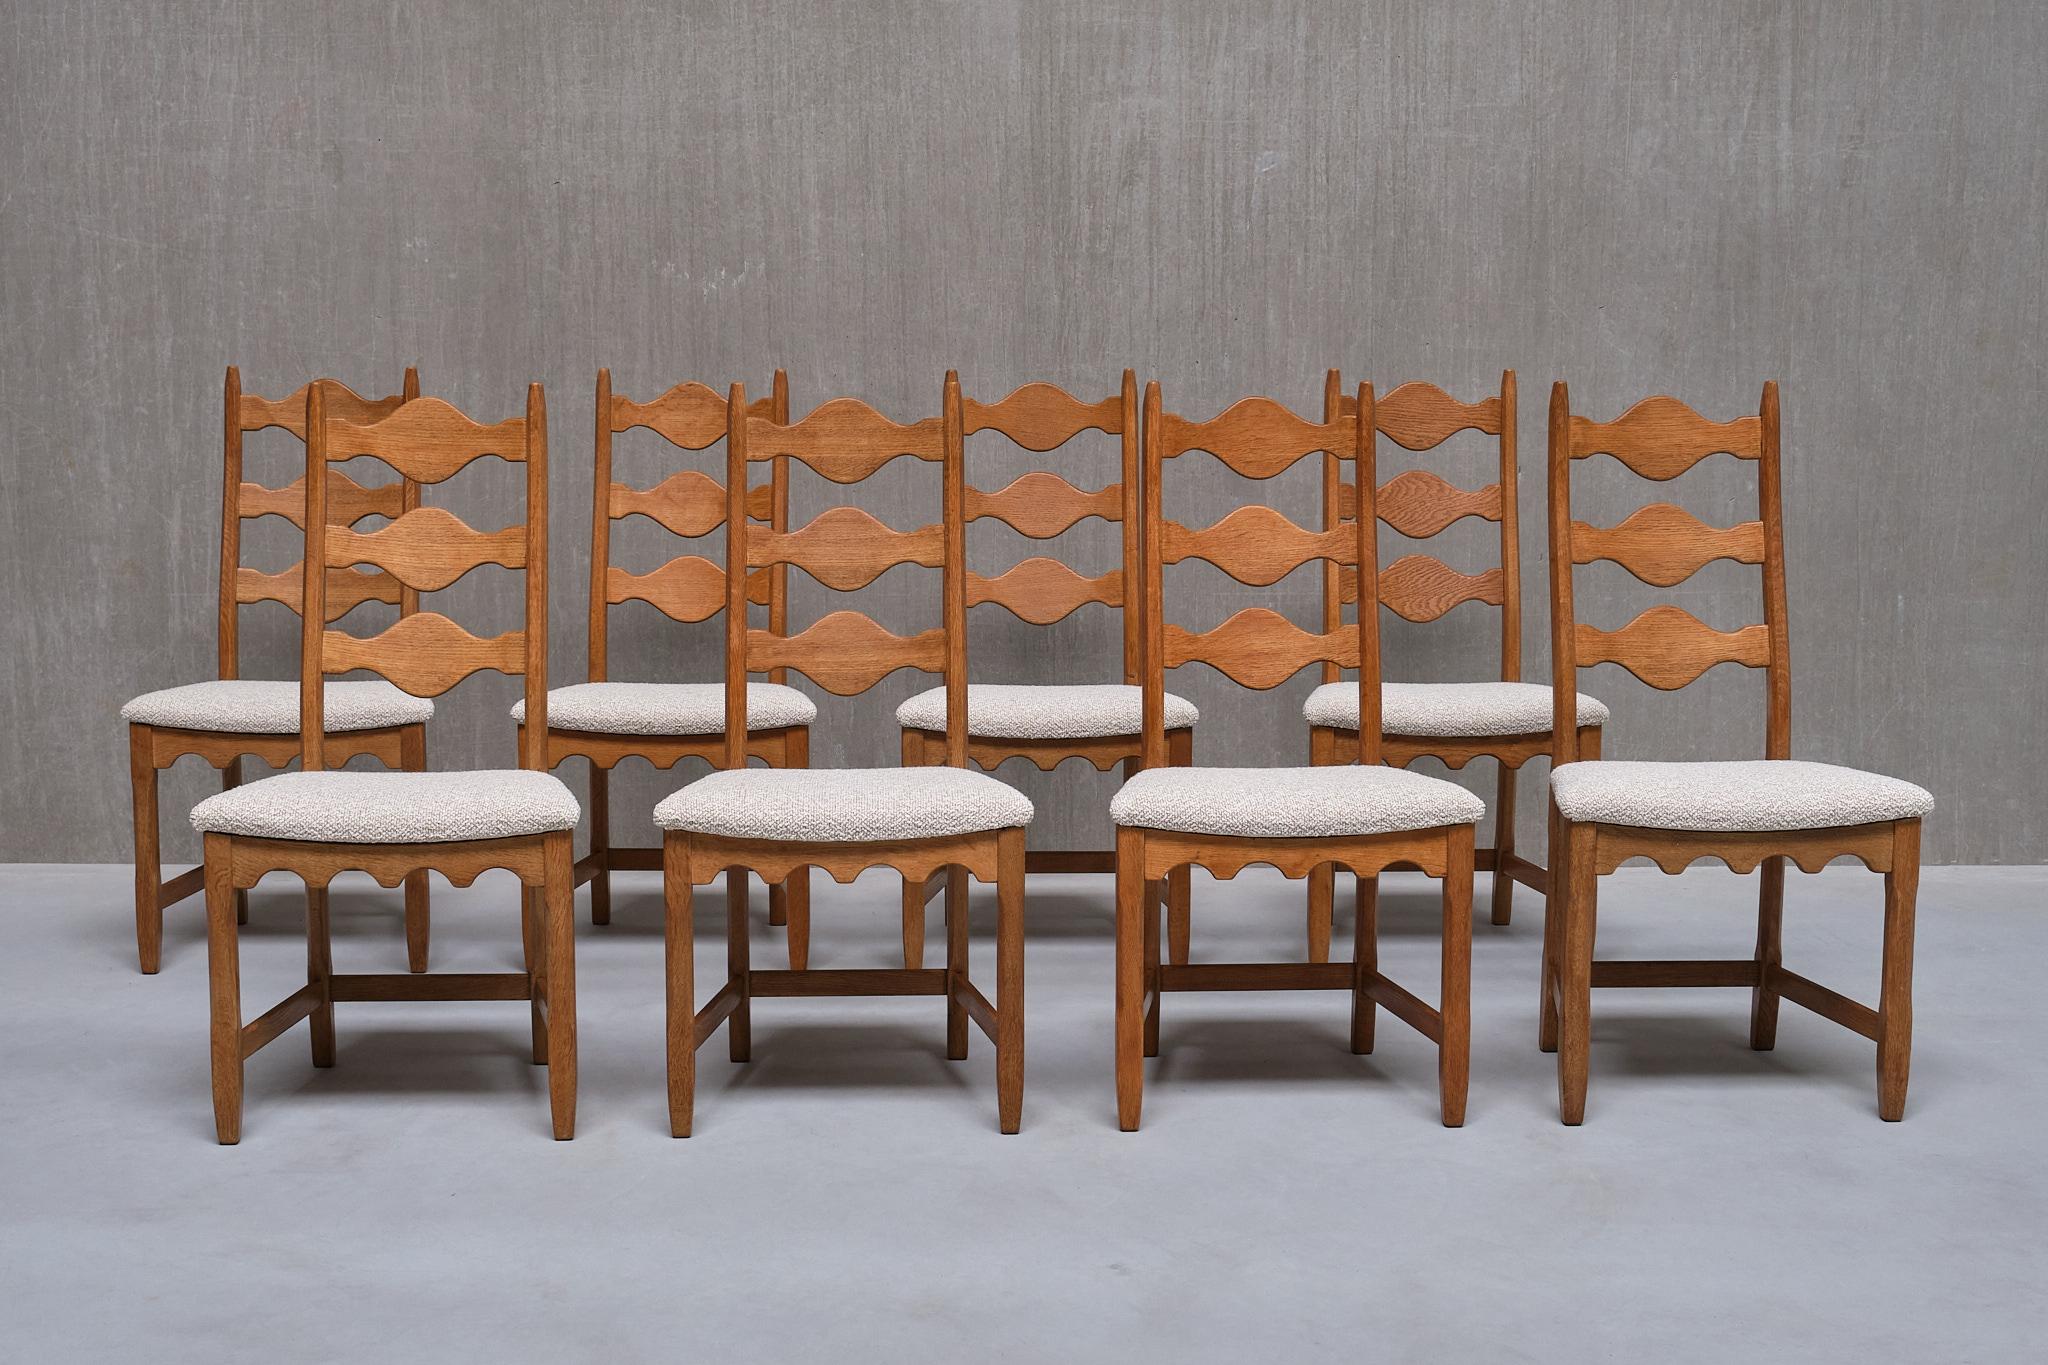 Ce remarquable ensemble de huit chaises de salle à manger a été conçu par Henning (Henry) Kjærnulf dans les années 1960. Des chaises supplémentaires pour former un ensemble de 9 ou 10 sont disponibles sur demande.  Les chaises ont été produites par